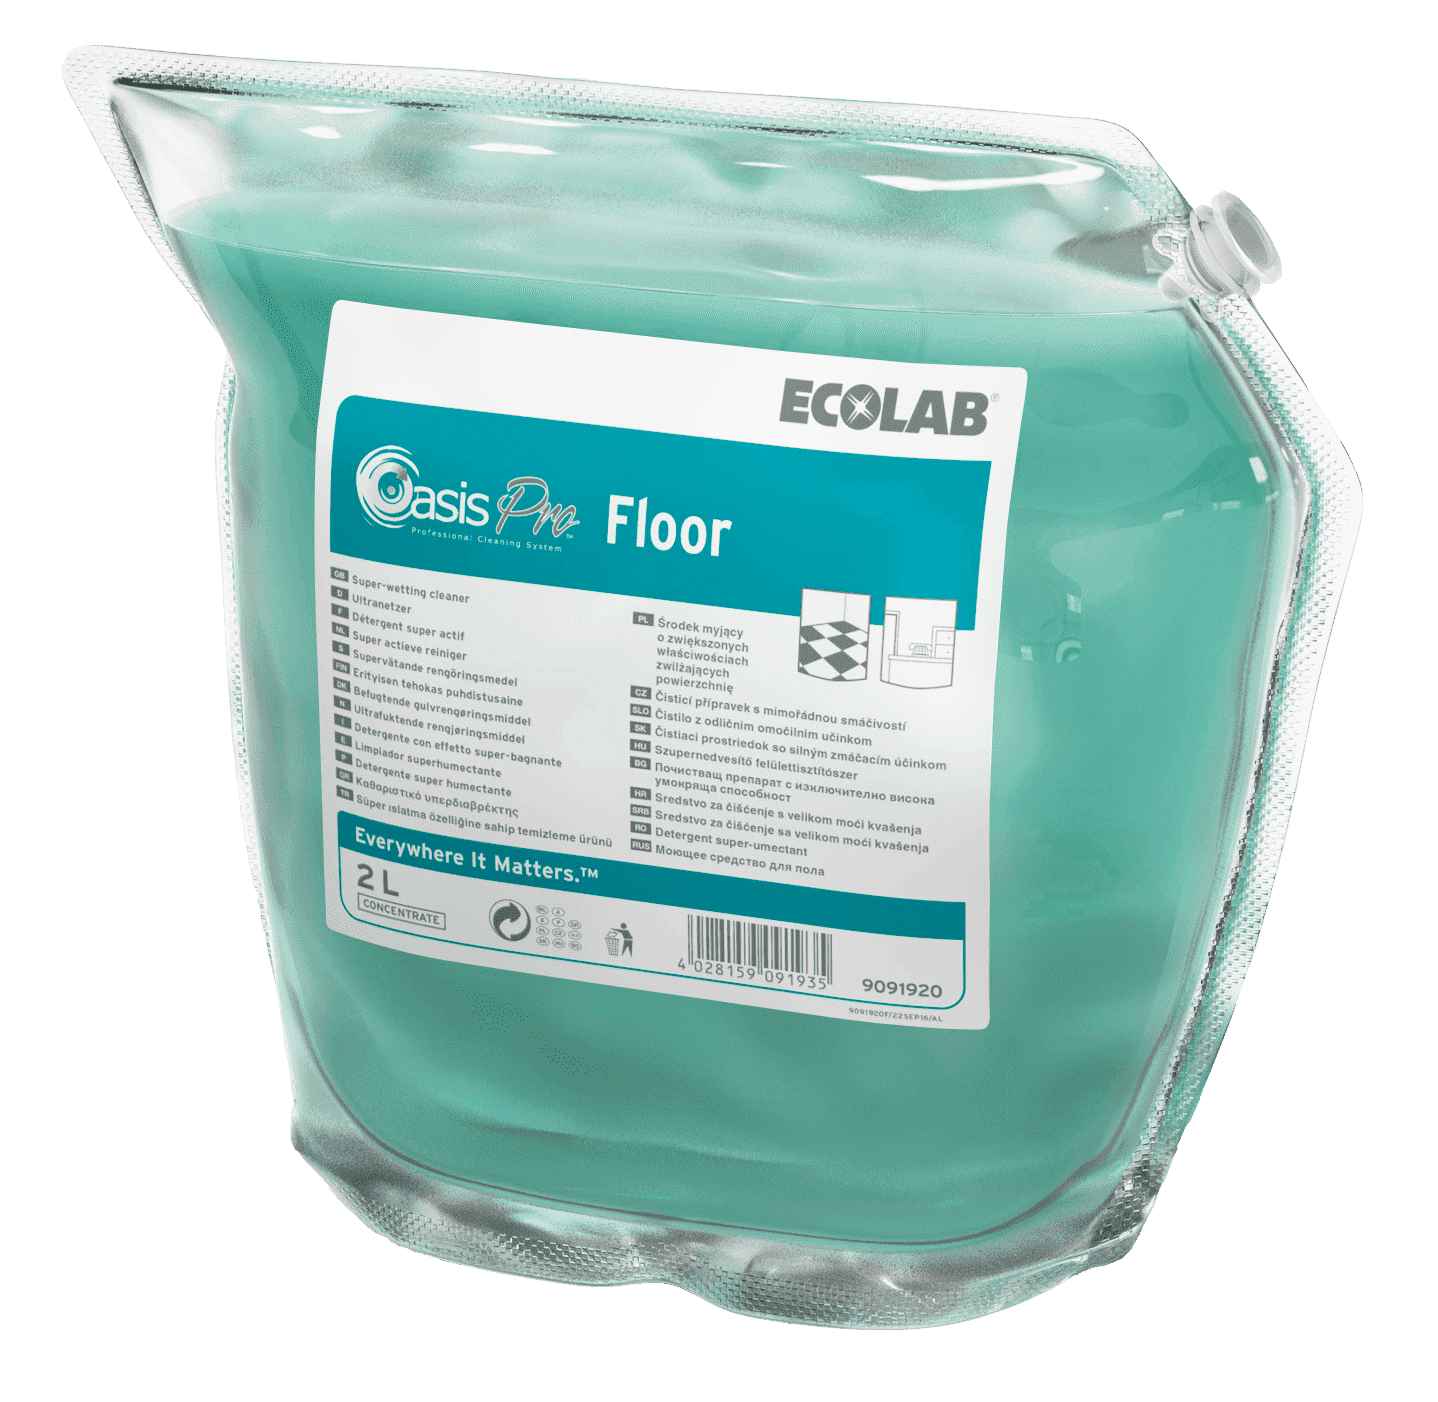 Ecolab Oasis Pro Floor концентрированное моющее средство для ежедневной уборки твердых полов, Клингард 0